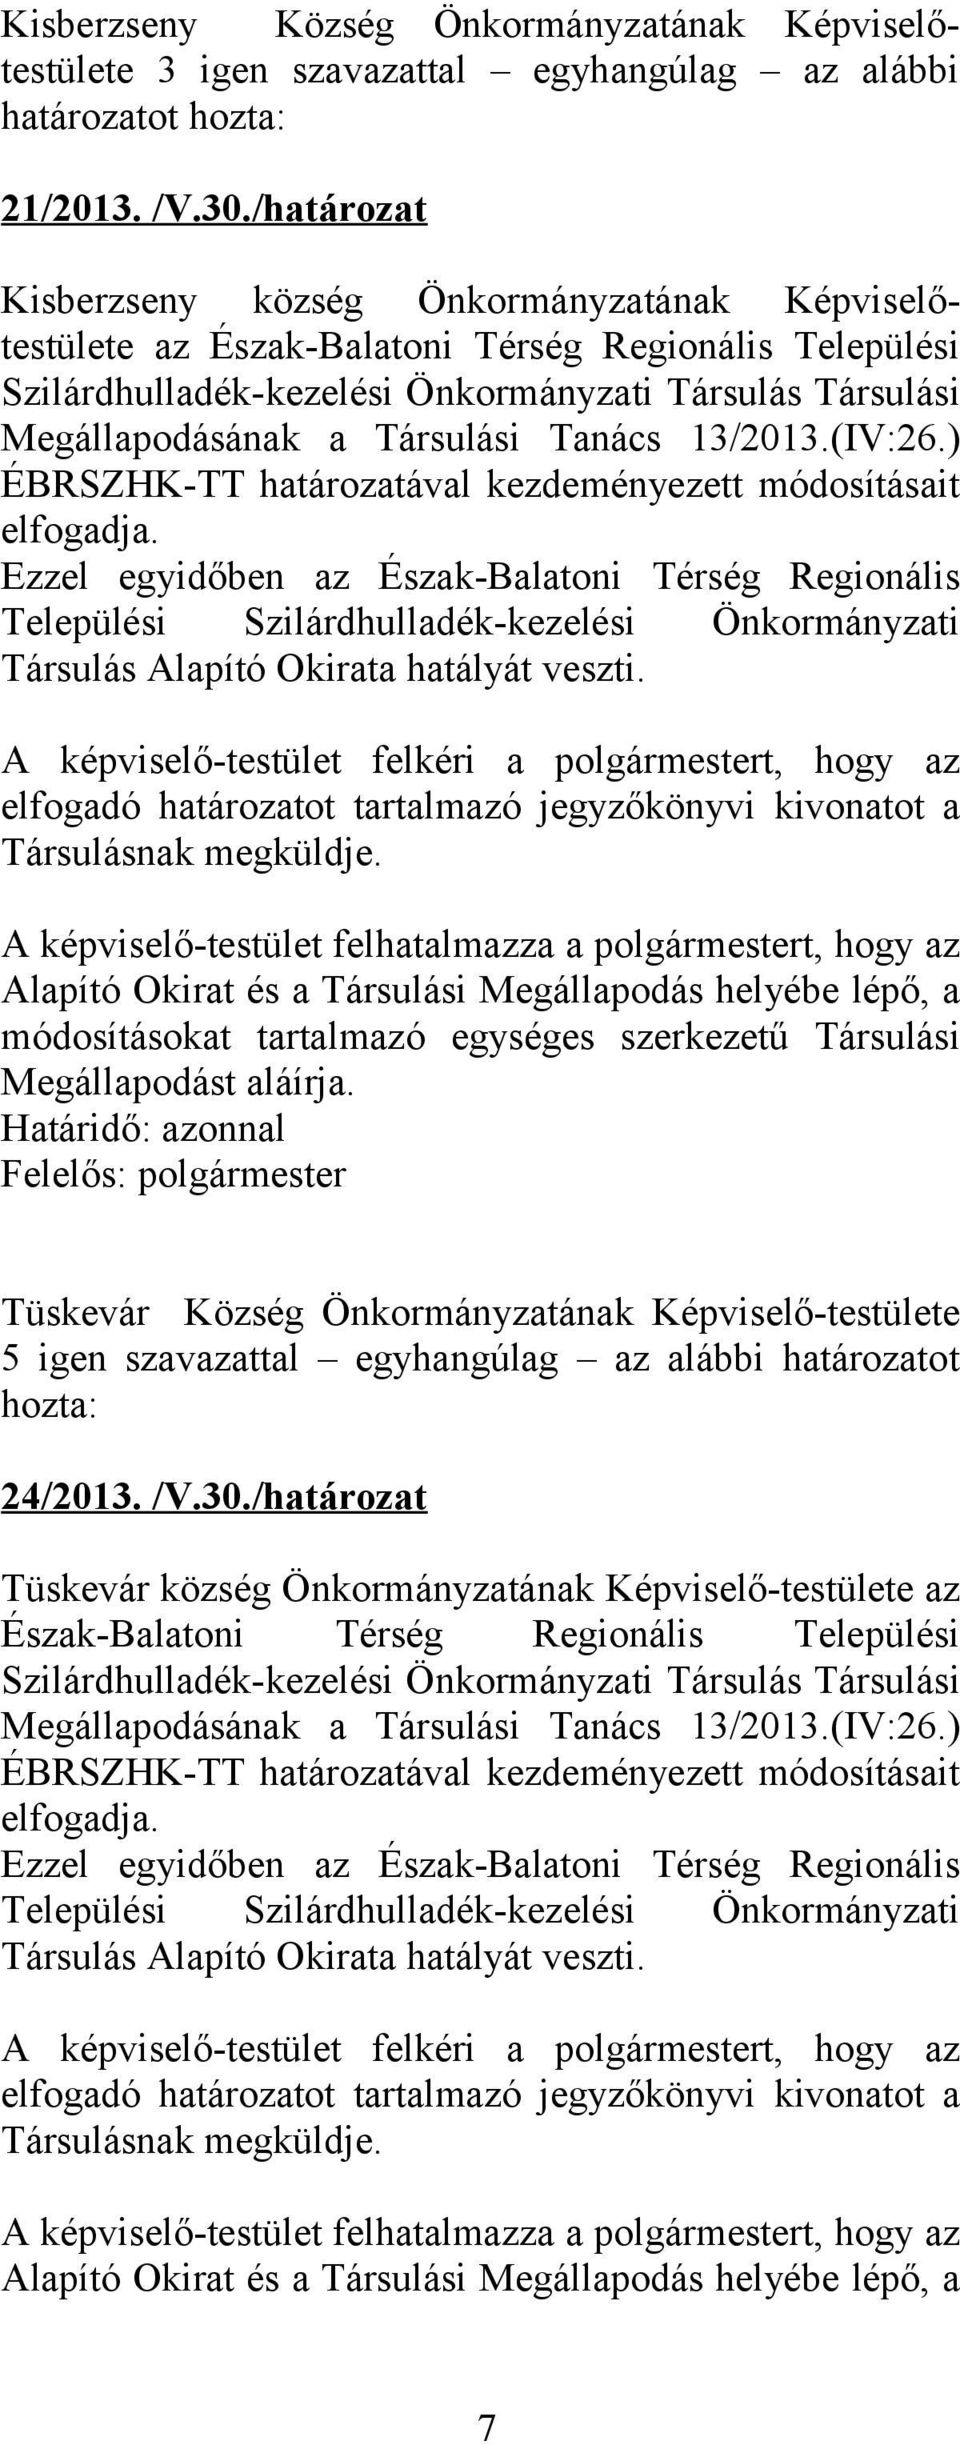 Tanács 13/2013.(IV:26.) ÉBRSZHK-TT határozatával kezdeményezett módosításait elfogadja.